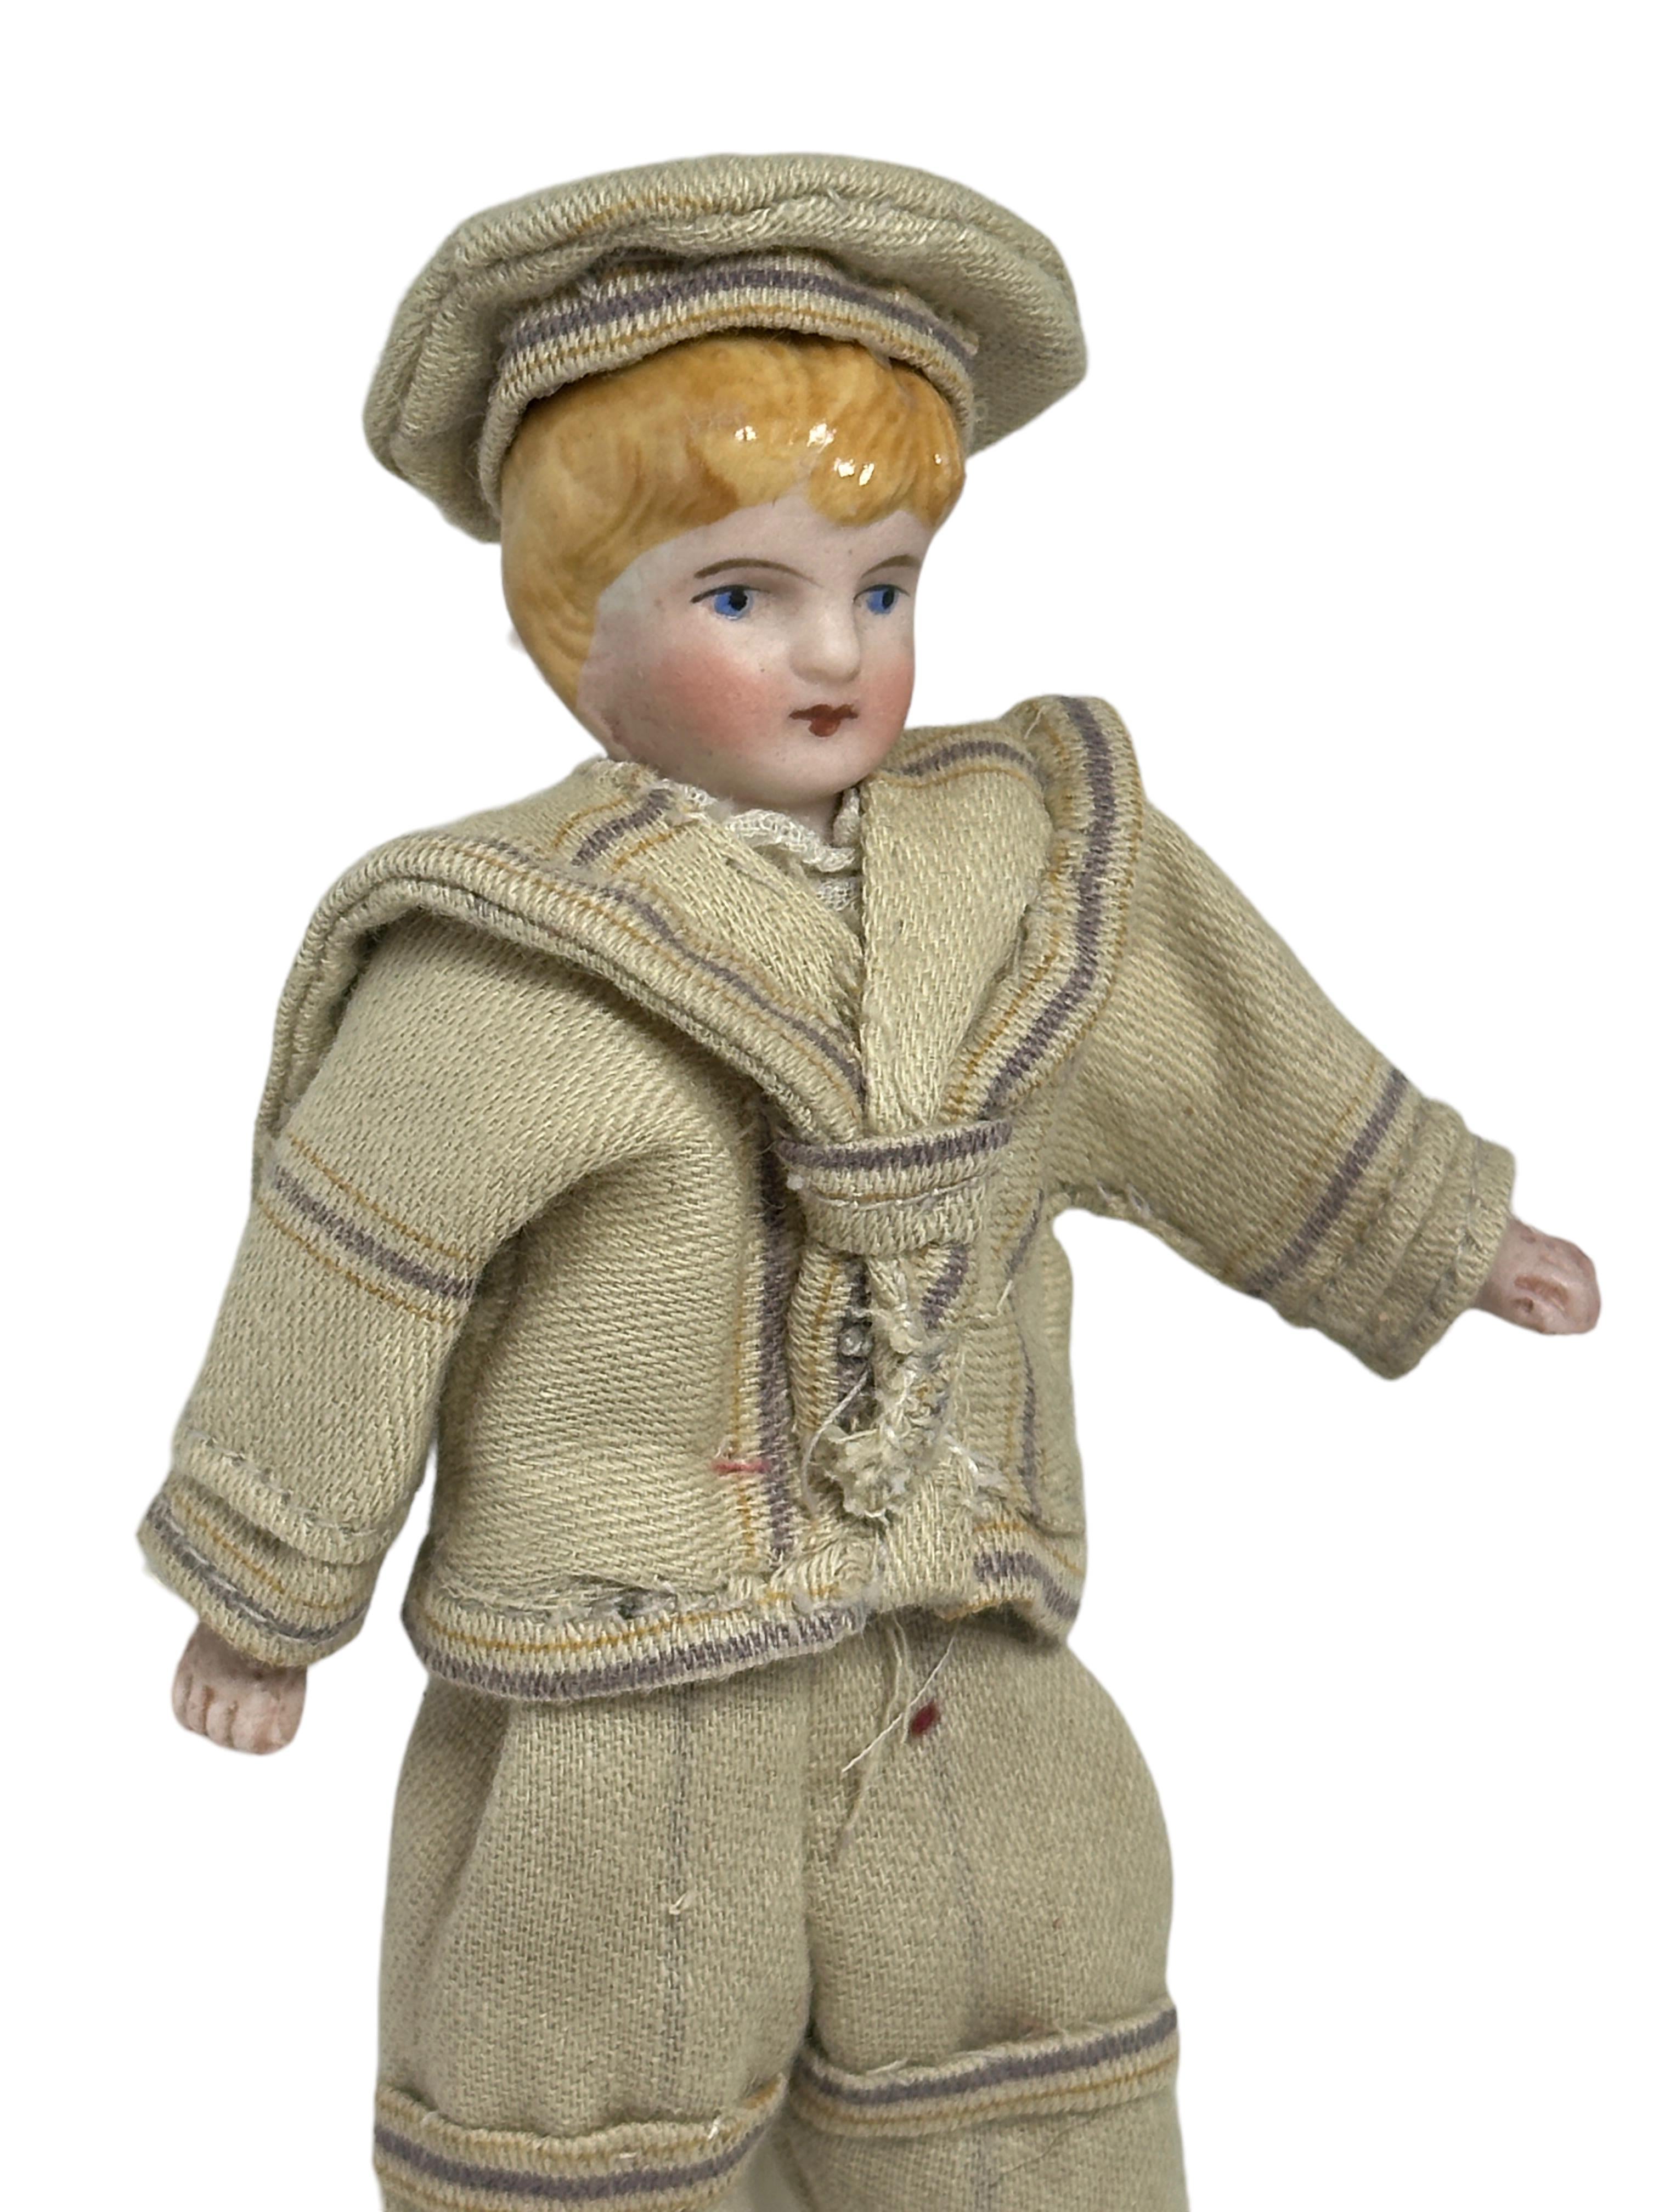 Fait main Garçon vêtu d'un costume de marin Antique German Dollhouse Doll Toy 1900s en vente